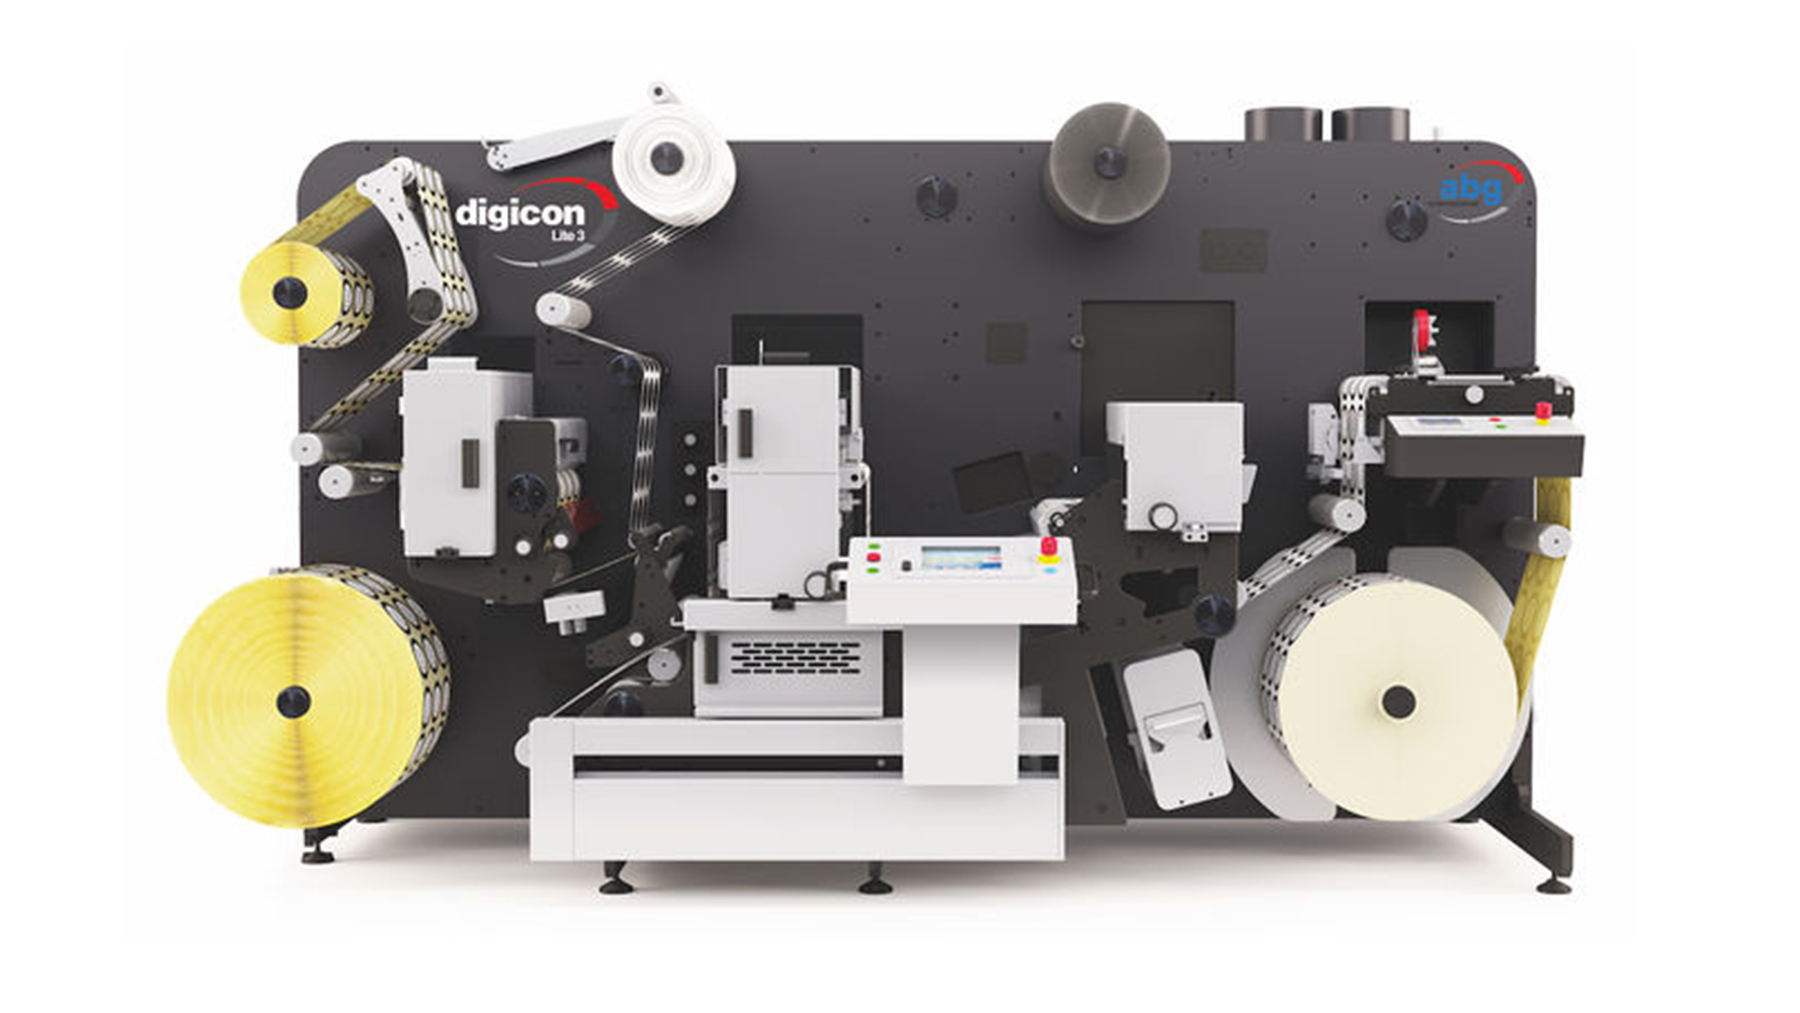 Graphic int. Цифровая печатная машина. Digicon 2 печатная машина. Digicon Series 3. Цифровая машина для печати механизм внутри.